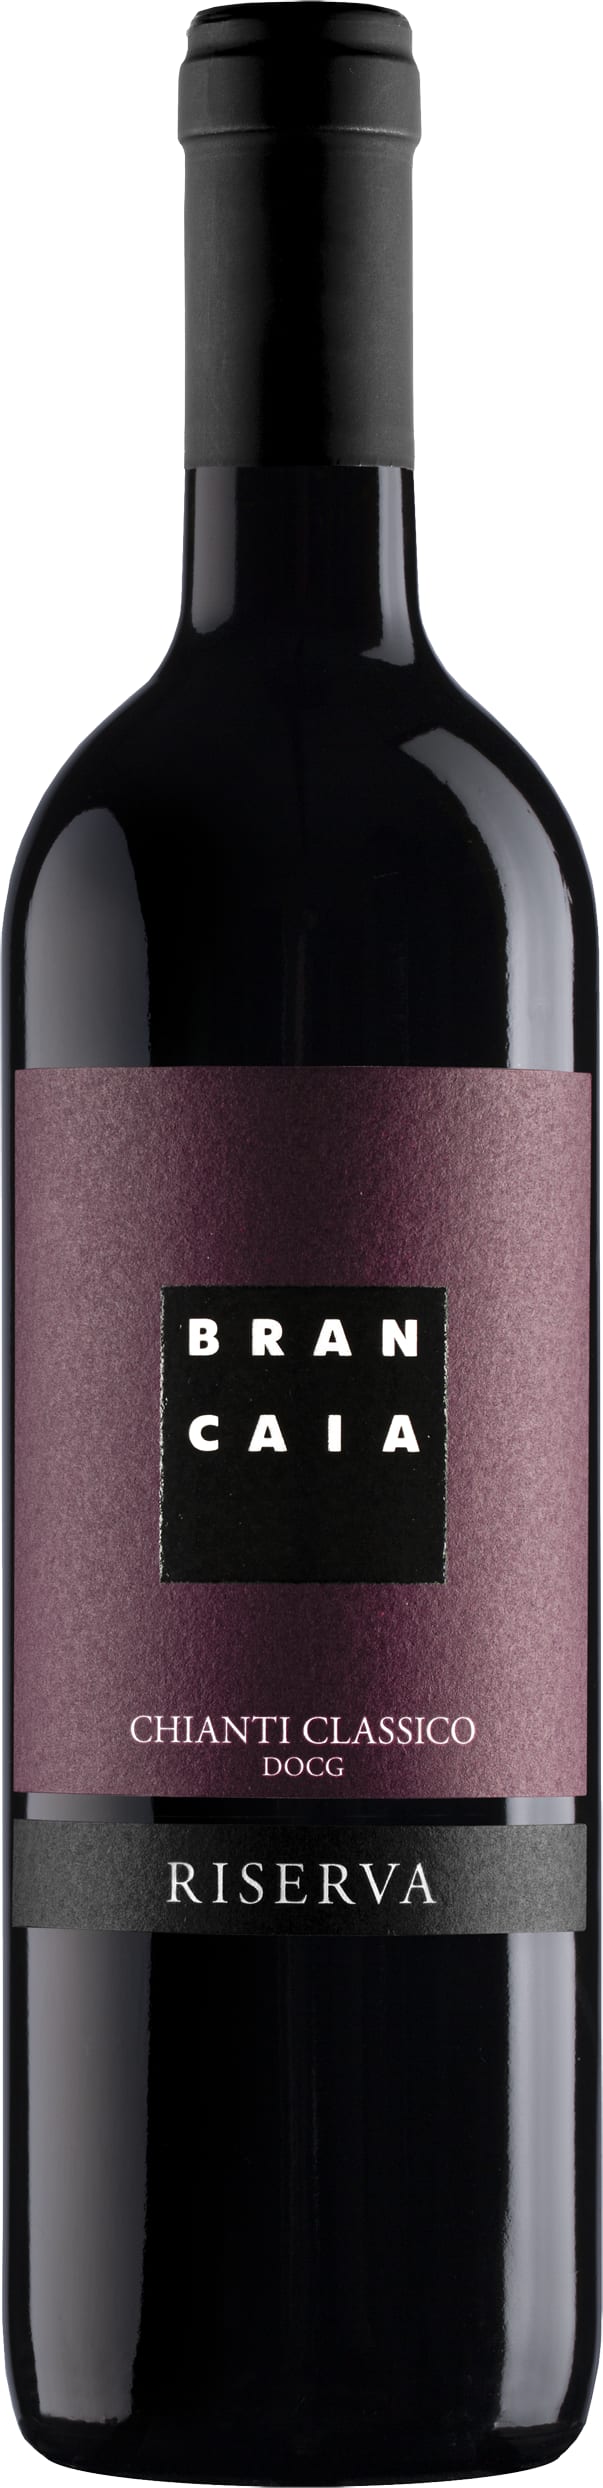 Casa Brancaia Chianti Classico Riserva 2020 75cl - Buy Casa Brancaia Wines from GREAT WINES DIRECT wine shop